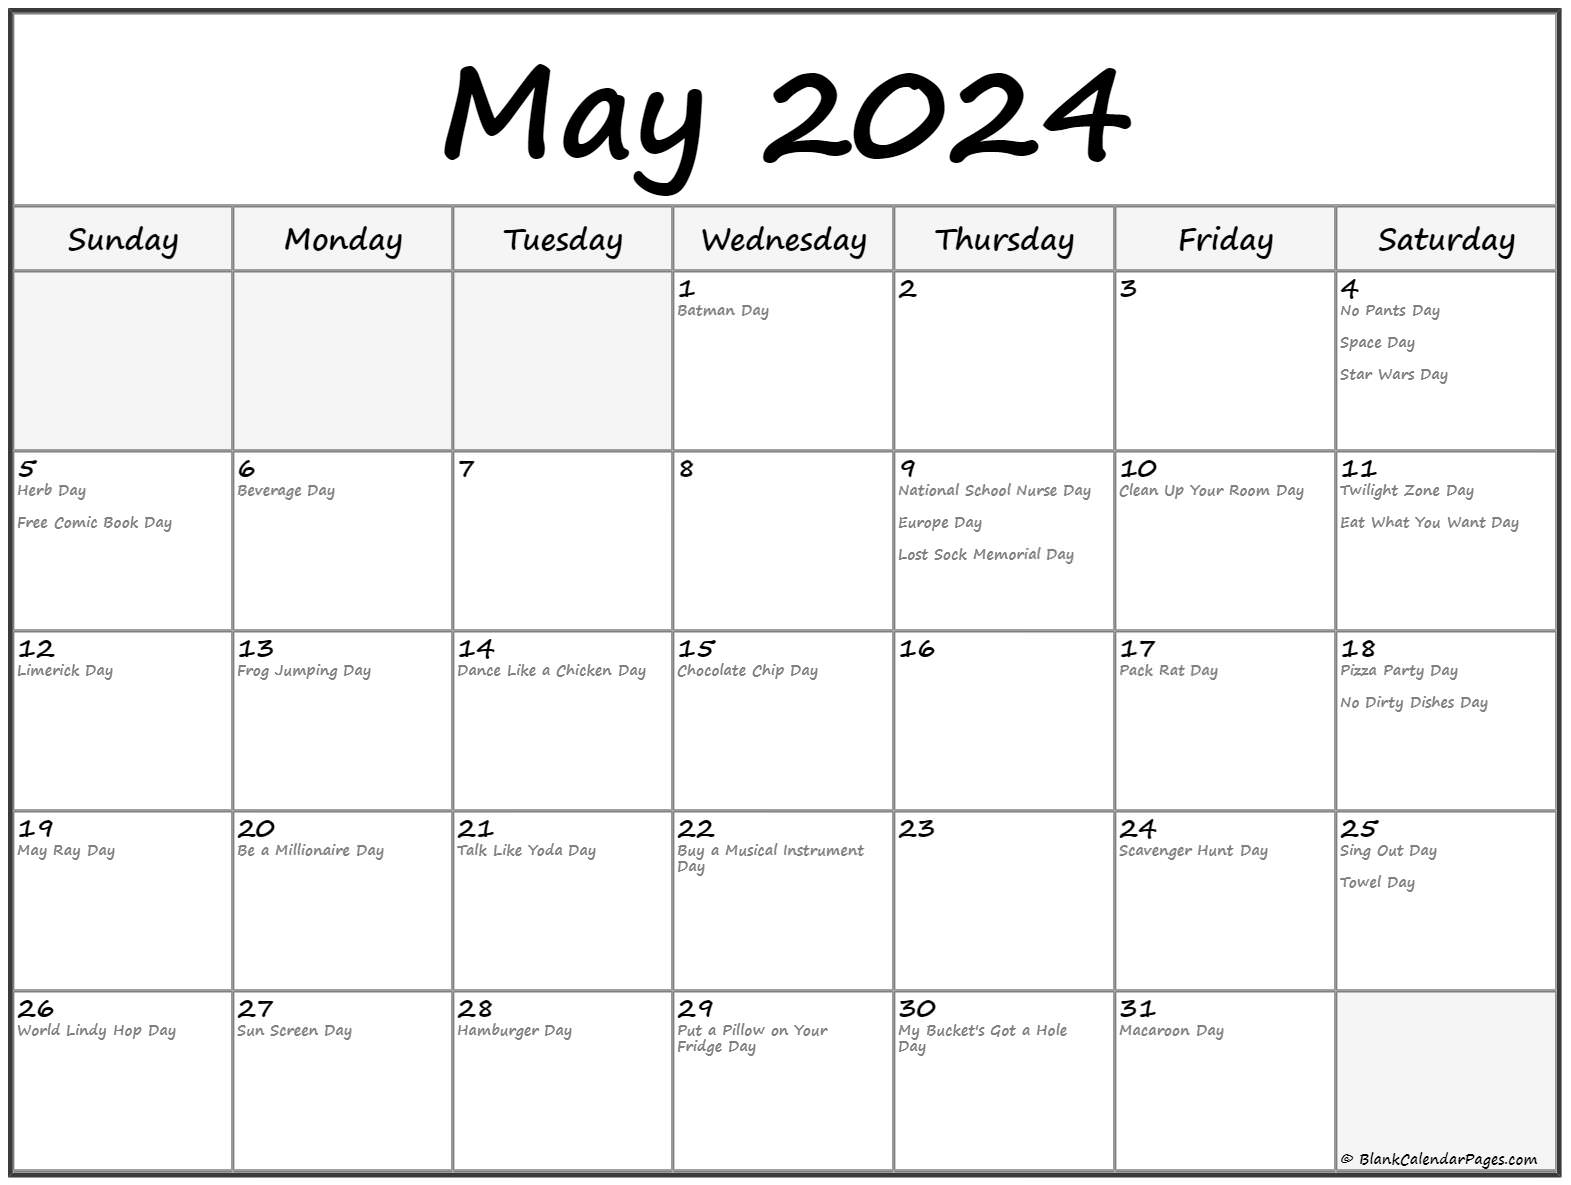 May 2024 Calendar Fun Holidays2 